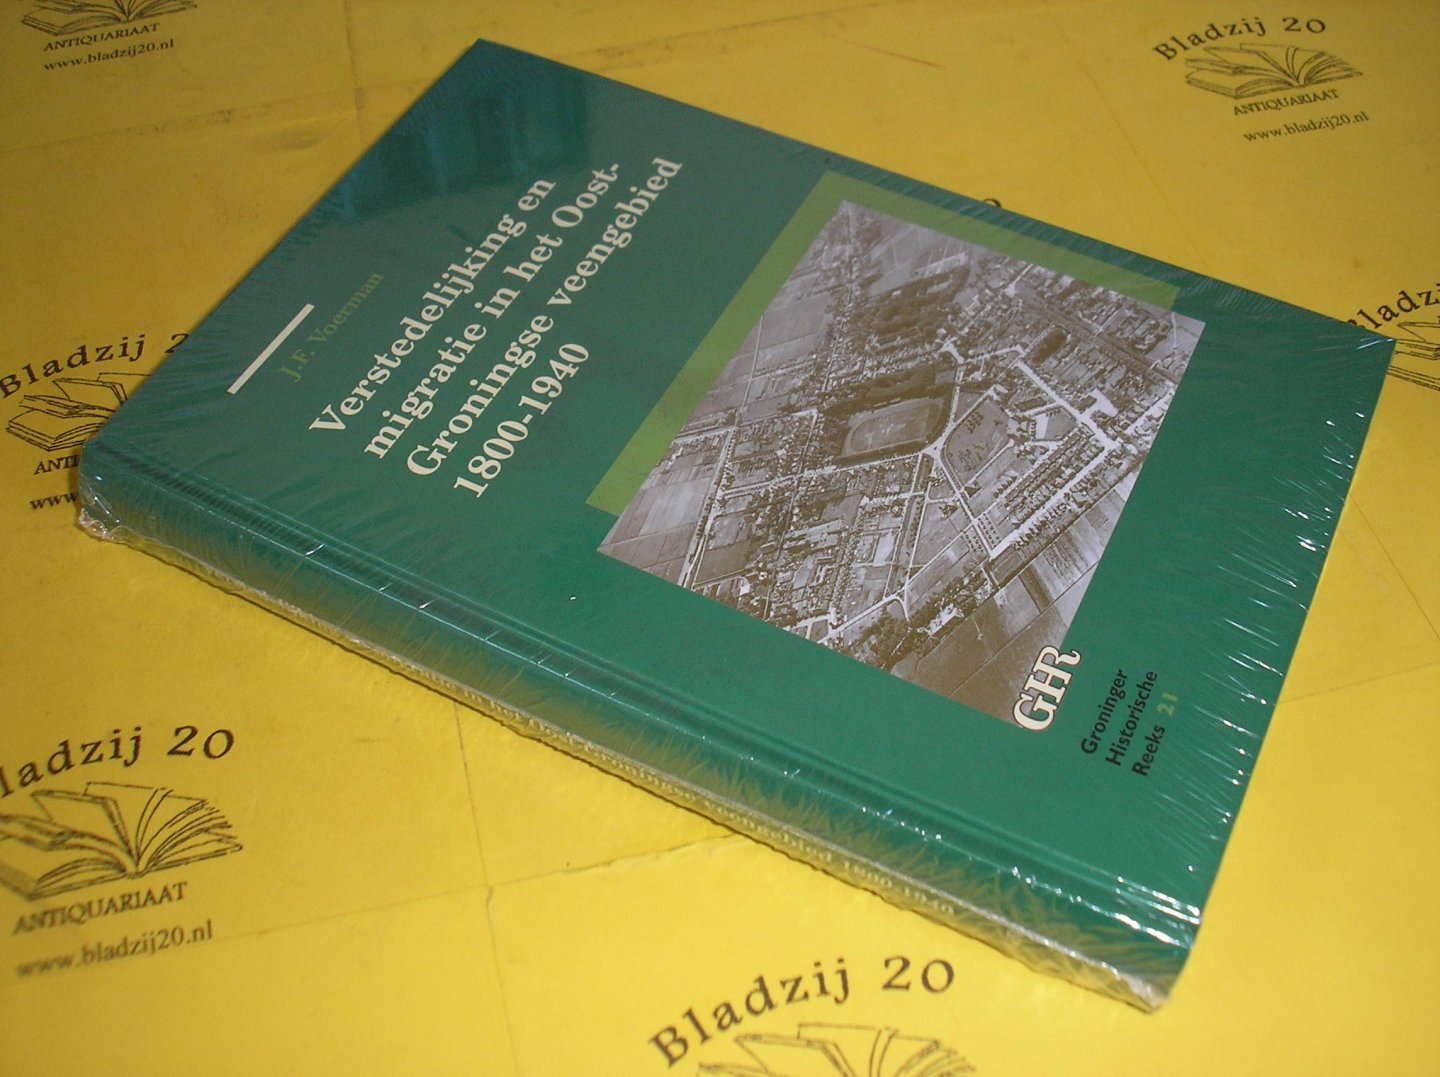 Voerman, J.F. - Verstedelijking en migratie in het Oost-Groningse veengebied 1800-1940.